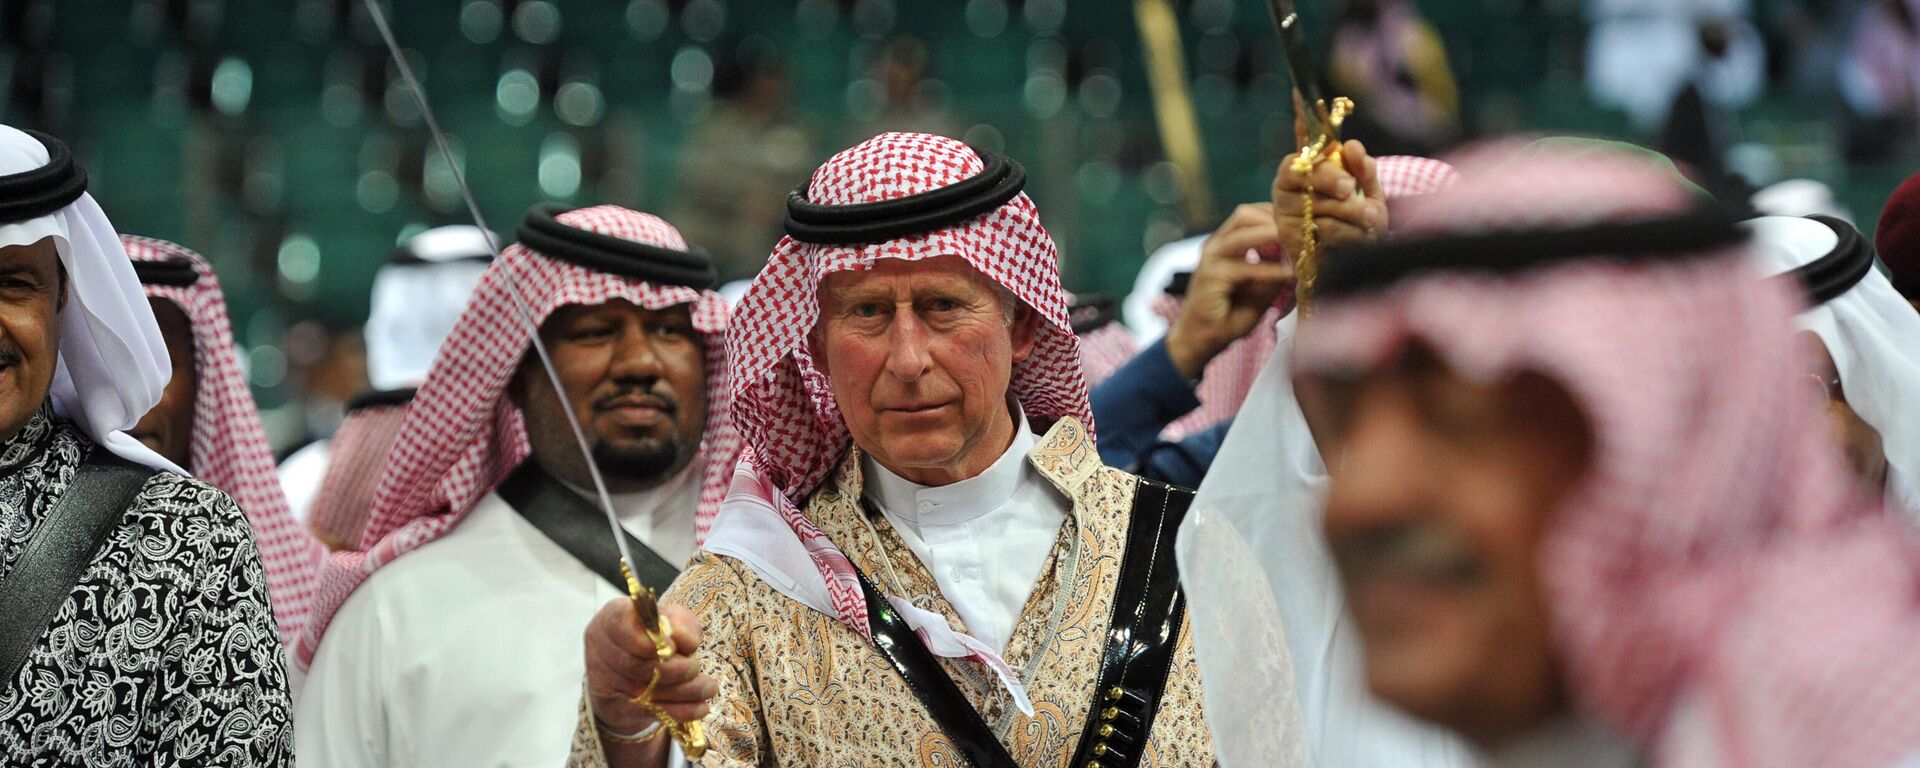 Londra Emniyet Teşkilatı, Prens Charles'ın kurduğu vakfın bir Suudi iş insanına bağış karşılığı İngiliz vatandaşlığı ve onur unvanı vaat ettiğine dair basına yansıyan haberlerle ilgili soruşturma başlatmıştı. Öte yandan Charles, haziran ayında da vakfı için Katar’ın eski şeyhinden içinde milyonlarca euro olan bir çantayı teslim almakla suçlanmıştı. - Sputnik Türkiye, 1920, 13.09.2022